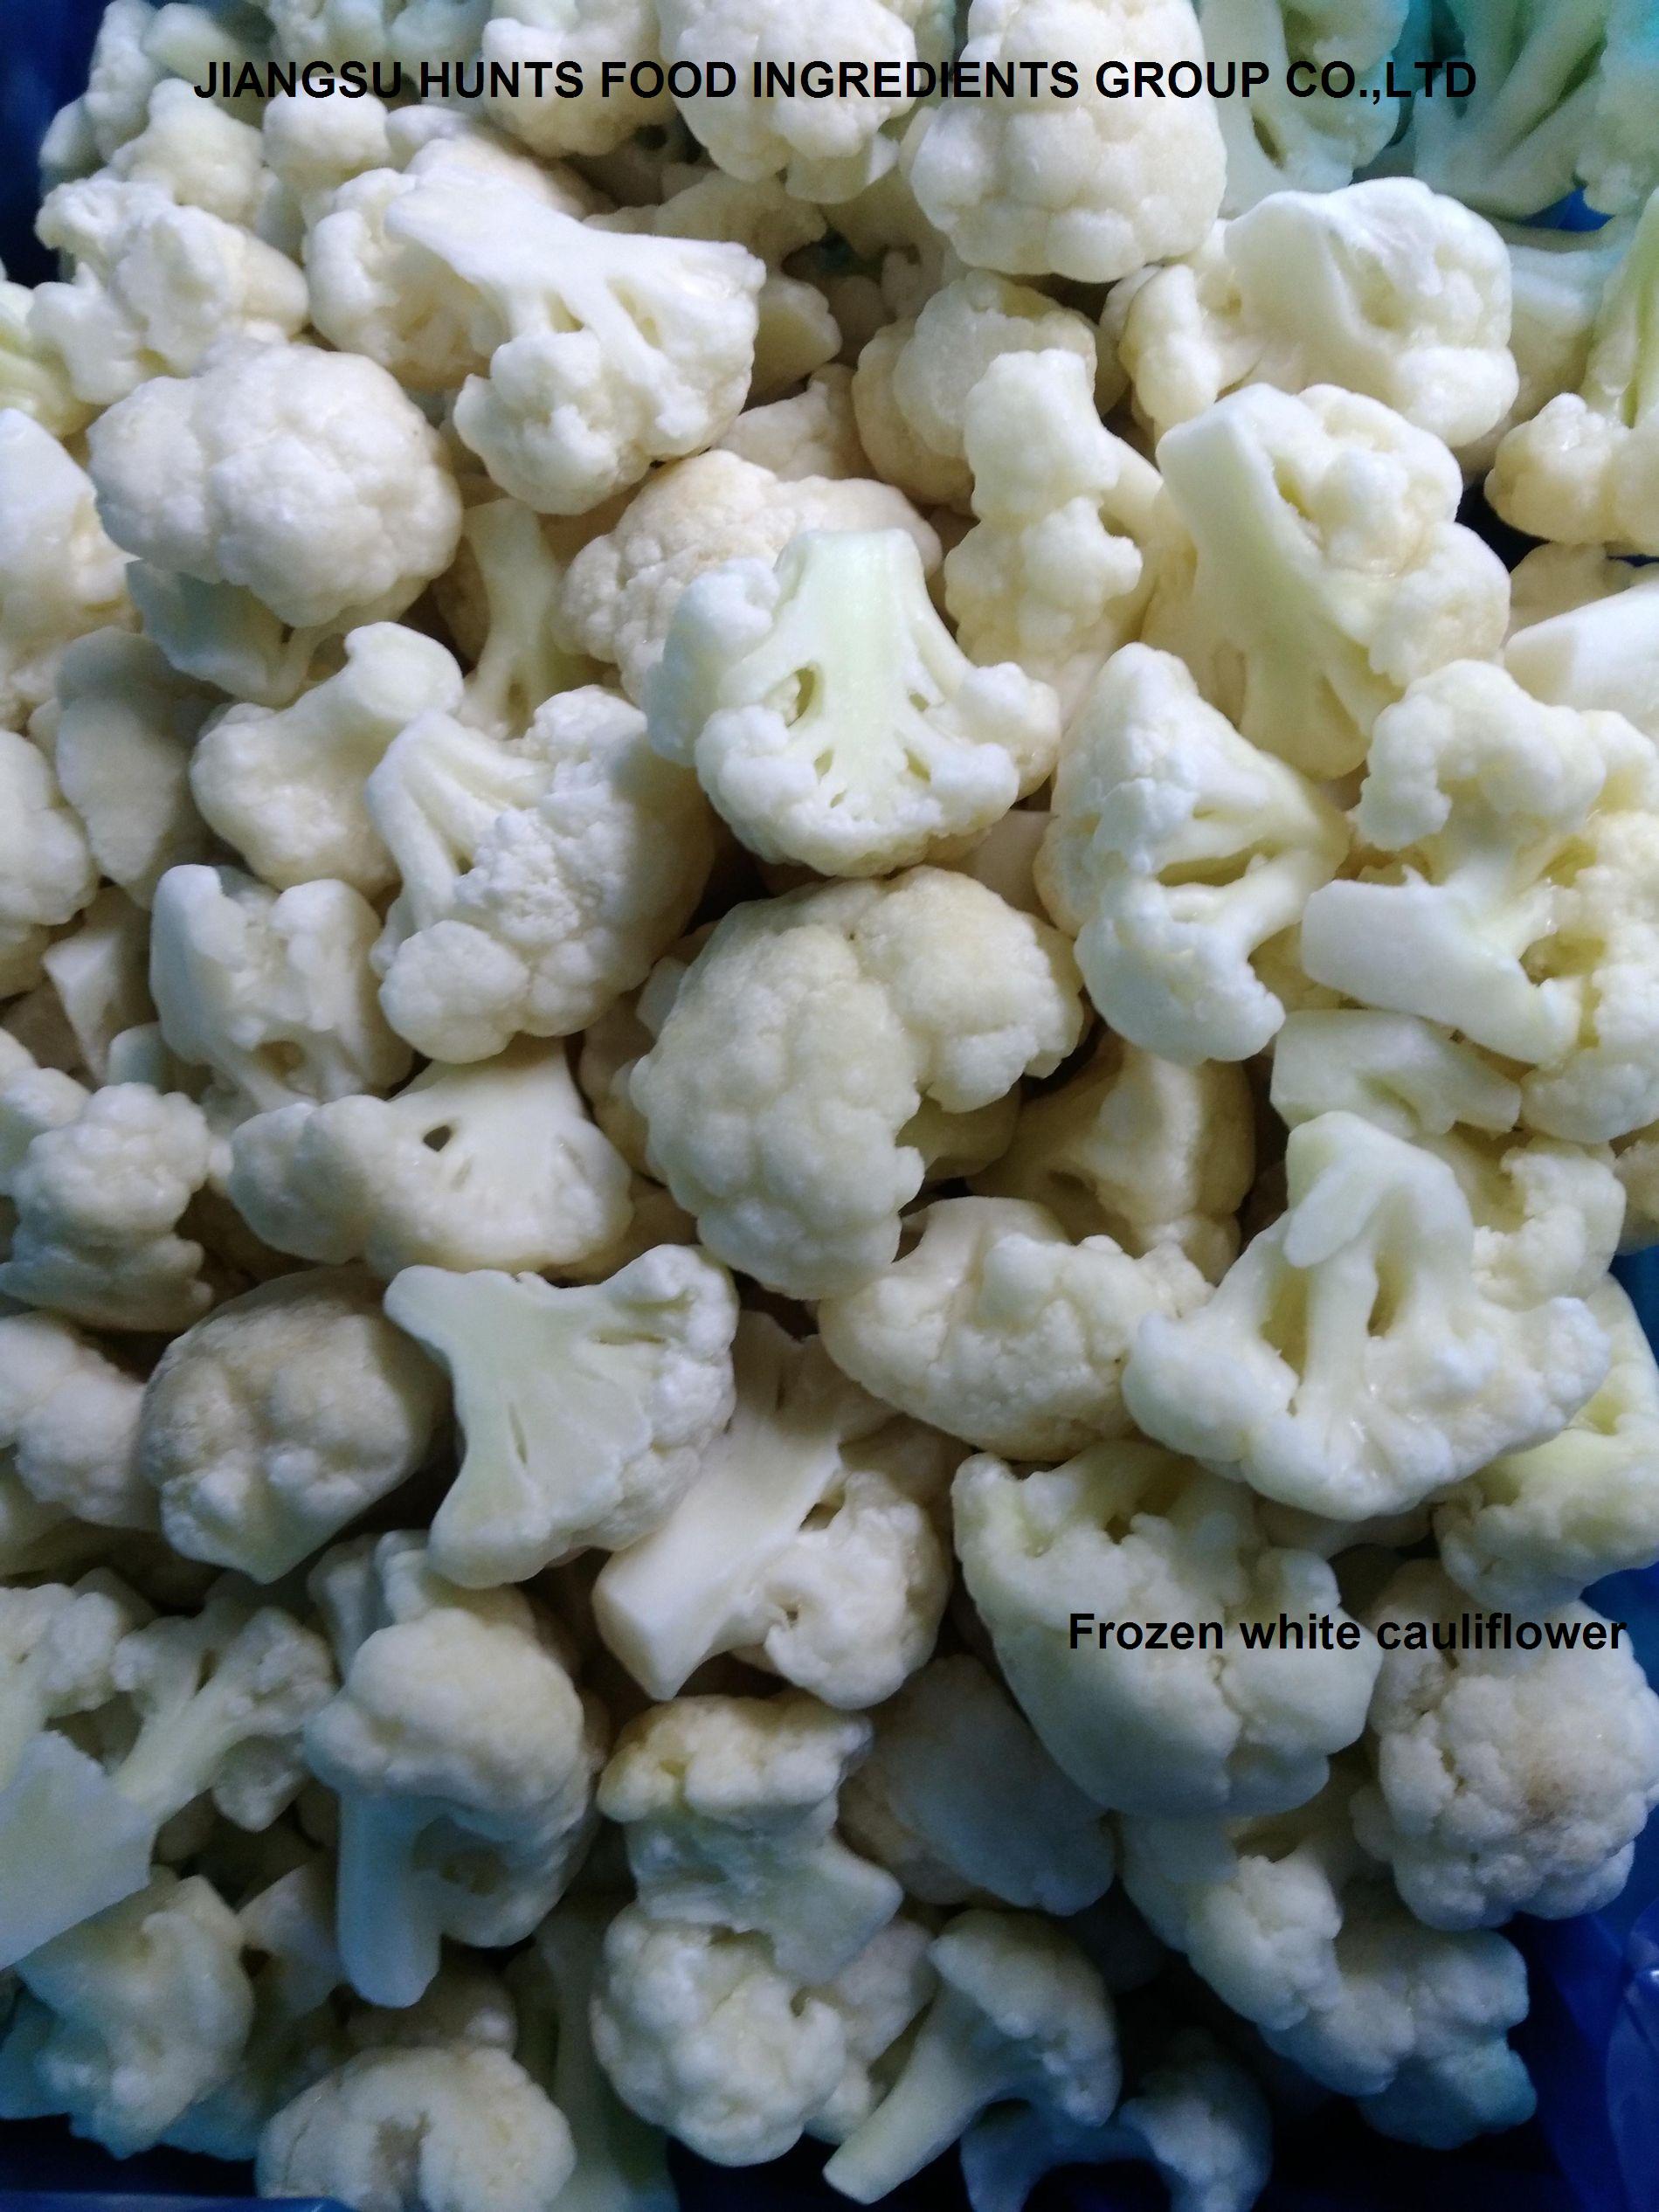 Frozen white cauliflower